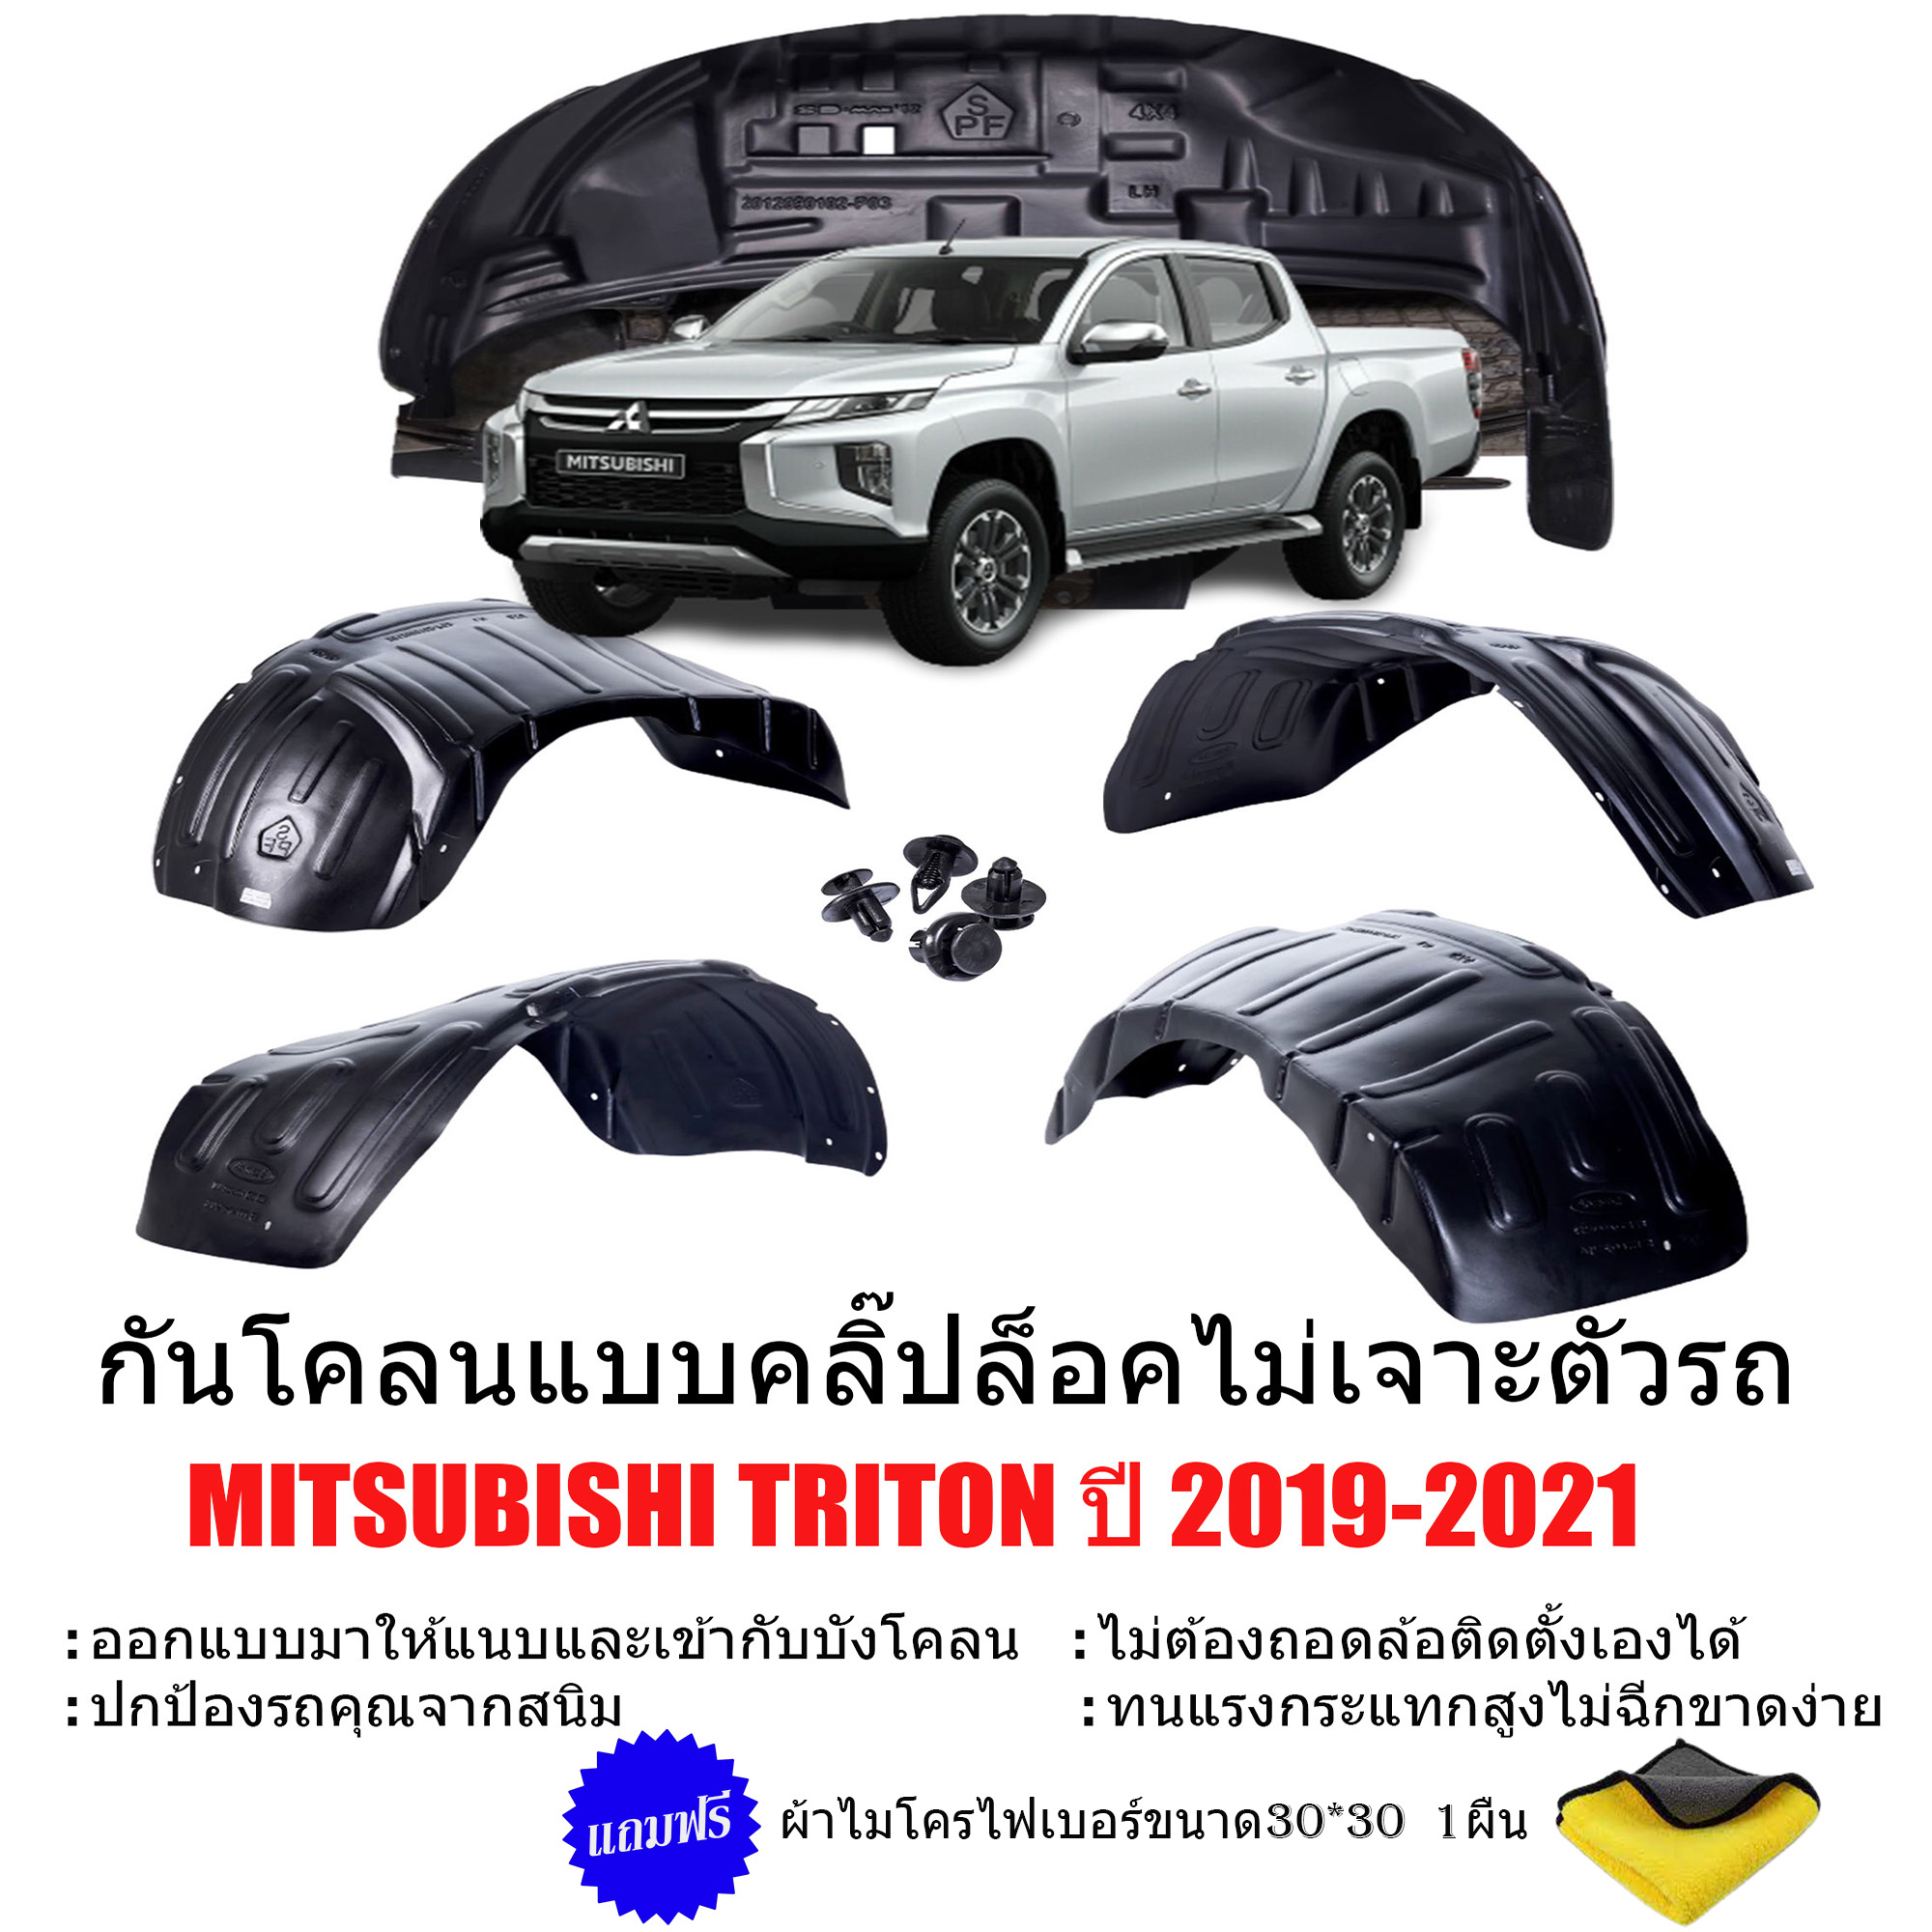 กันโคลนรถยนต์ MITSUBISHI TRITON ปี 2019-2021 (แบบคลิ๊ปล็อคไม่ต้องเจาะตัวรถ) สำหรับ CAB , 4D, ตอนเดียว กรุล้อ ซุ้มล้อ กันโคลน บังโคลน กันโคลนซุ้มล้อ